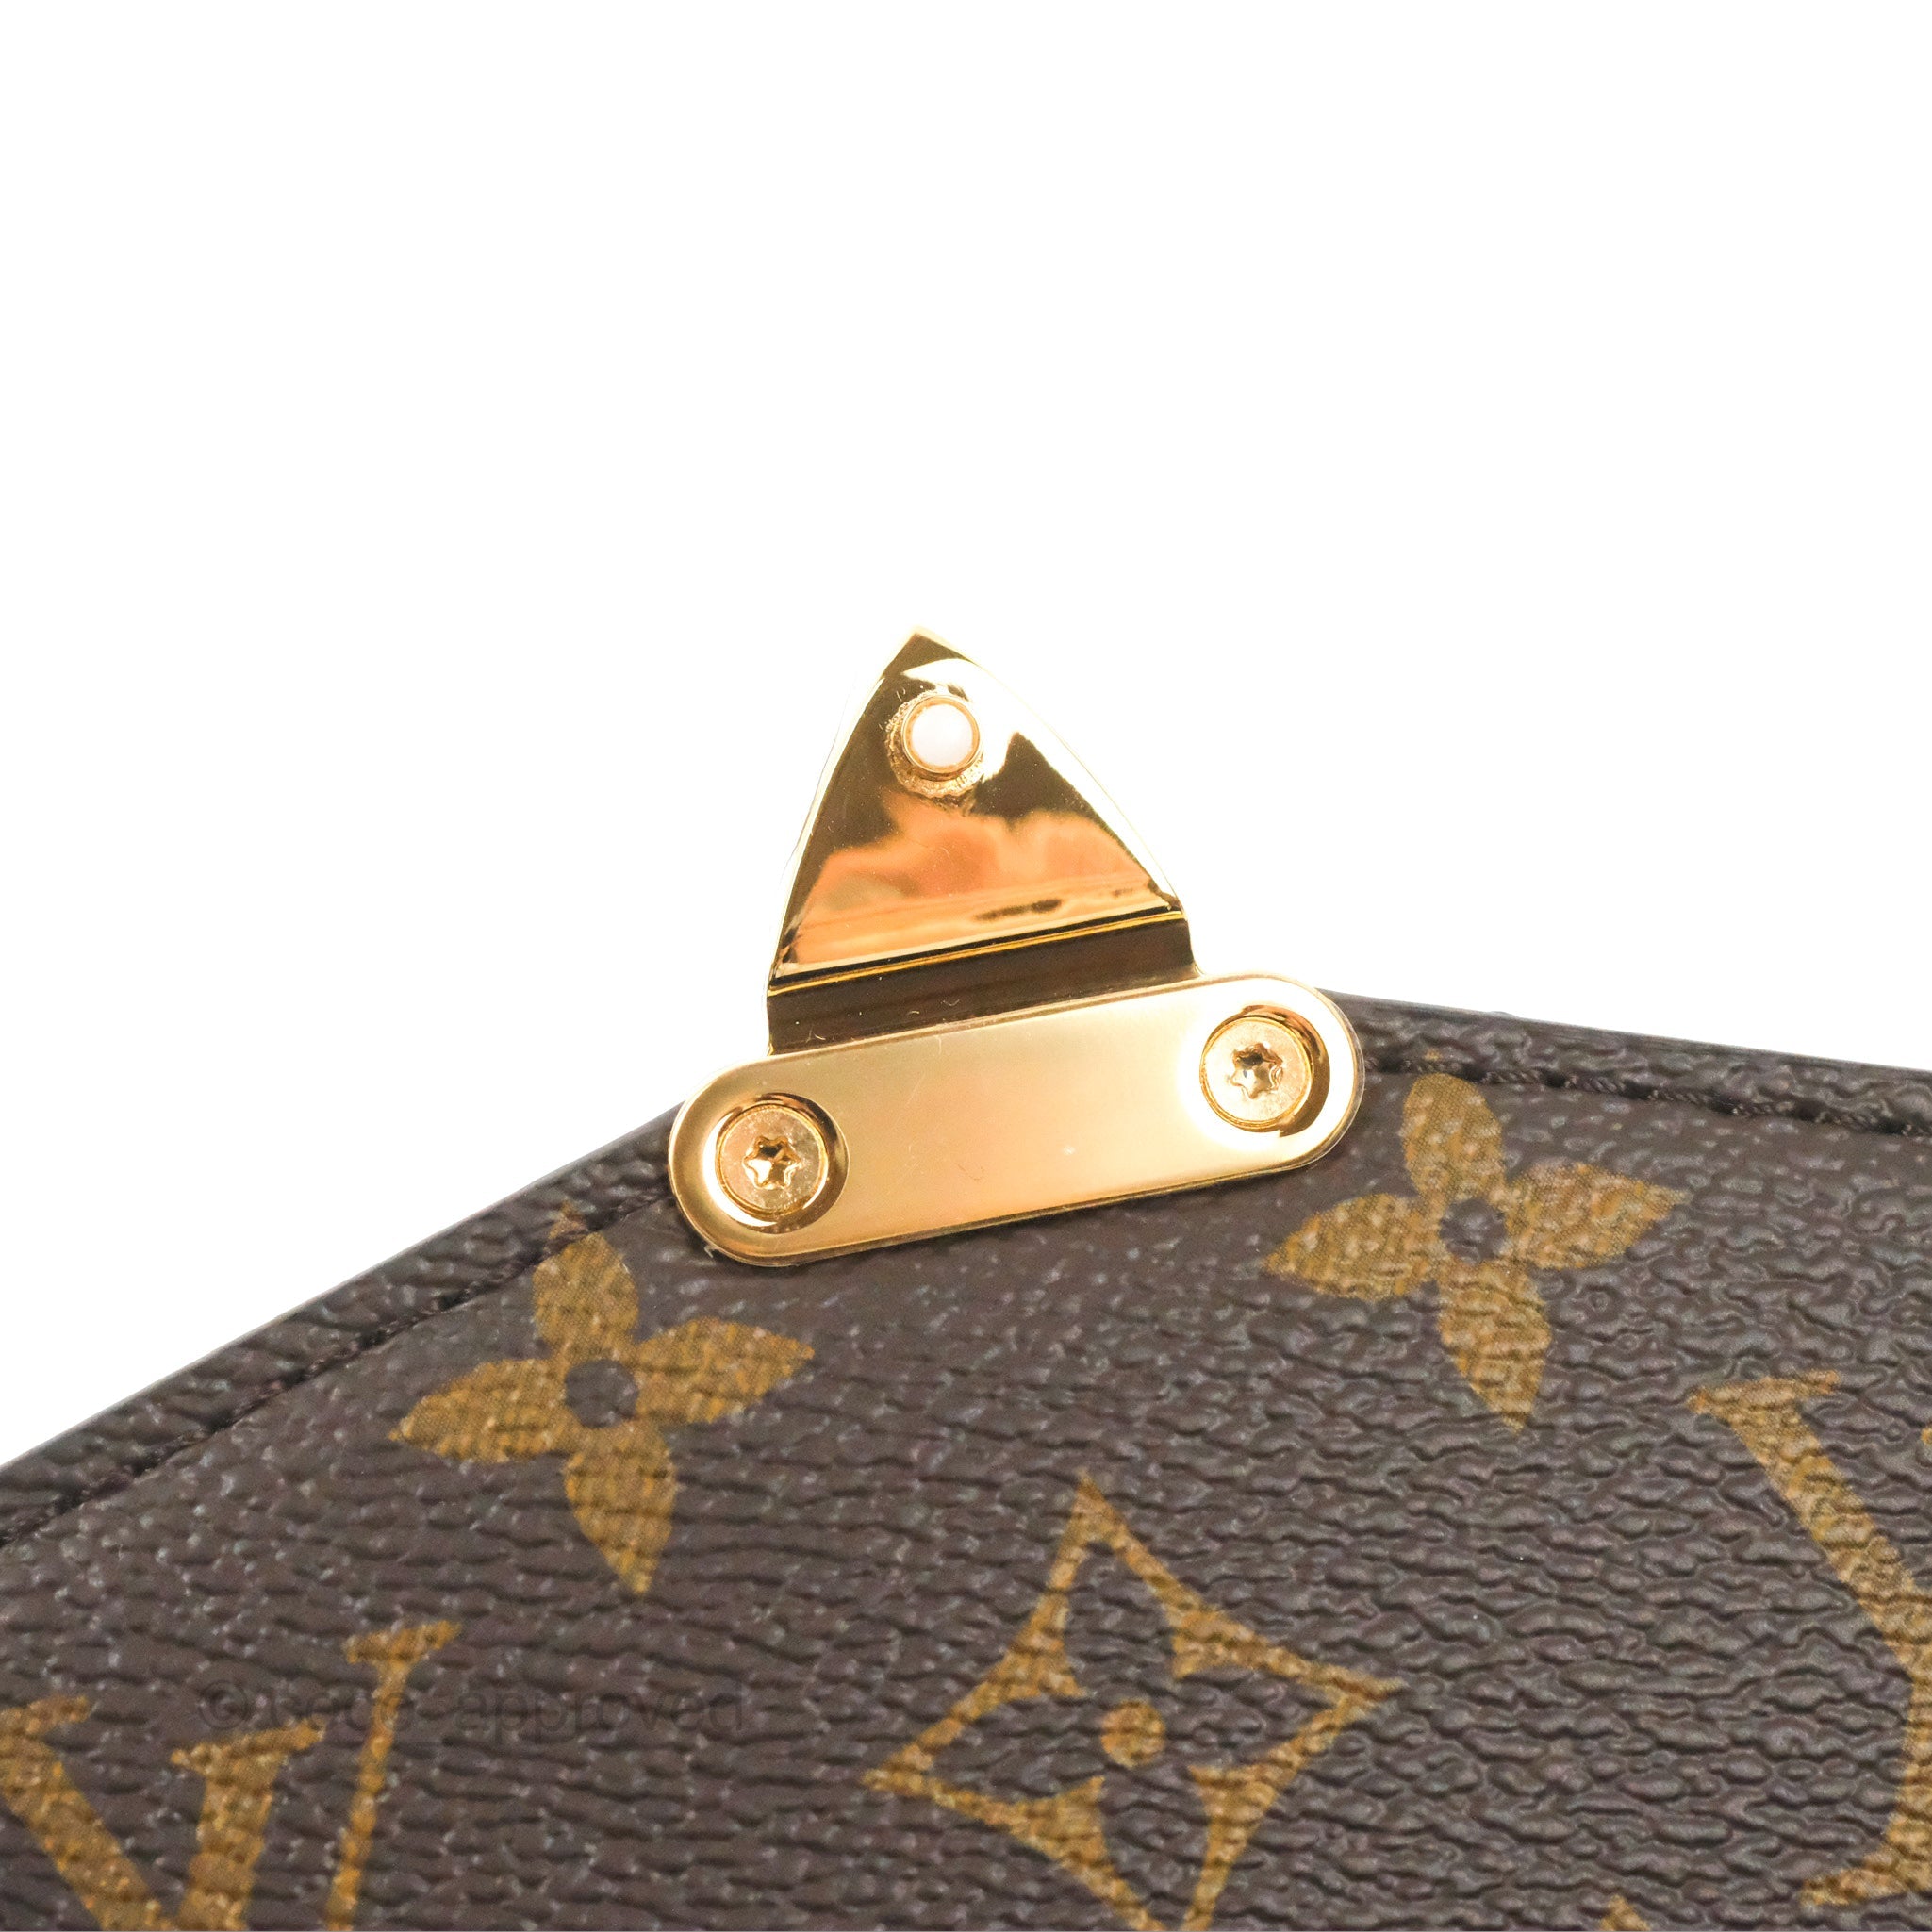 Louis Vuitton Pochette metis EAST WEST Bag First Impressions Ft. ViVaia  Shoes 